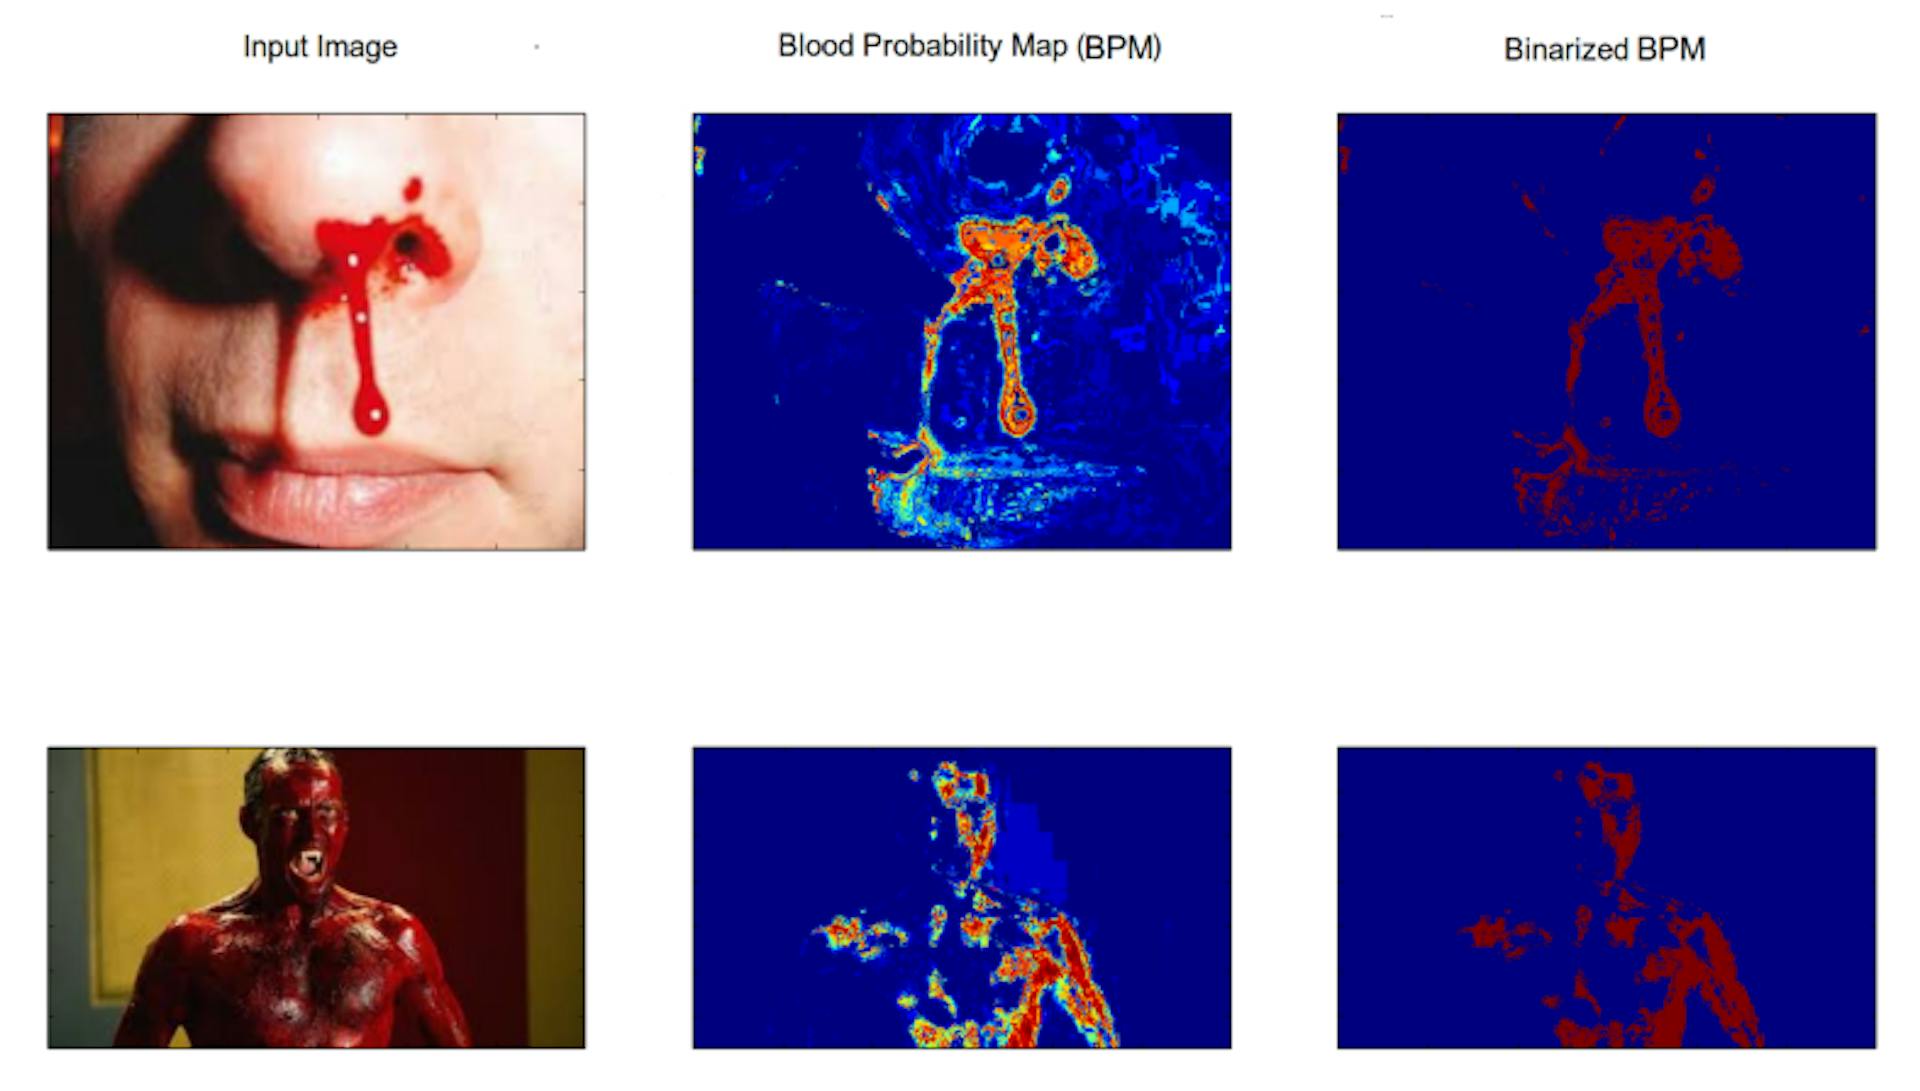 Hình 3.4: Hình minh họa hiệu suất của mô hình máu được tạo ra trong việc phát hiện máu. Cột đầu tiên có hình ảnh đầu vào, cột thứ hai có bản đồ xác suất máu và cột cuối cùng có bản đồ xác suất máu nhị phân.